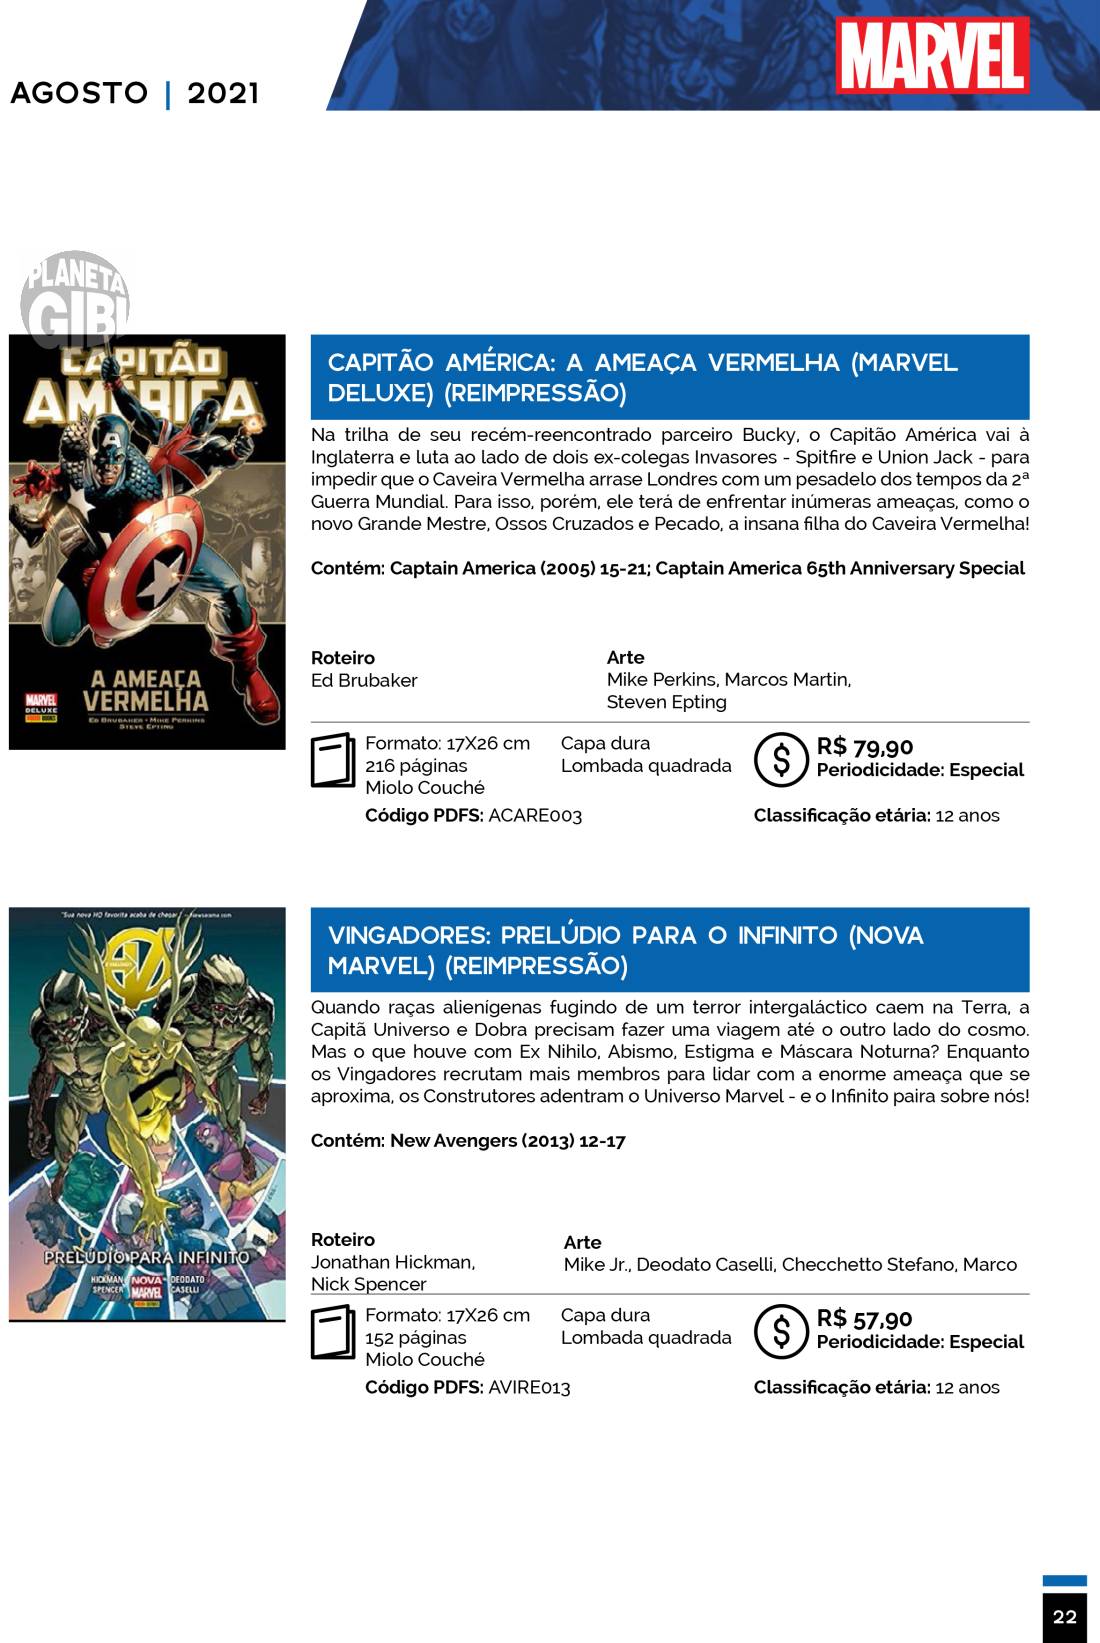 7 - Checklist Marvel/Panini (Julho/2020 - pág.09) - Página 9 Catalogo-Julho-Agosto-22